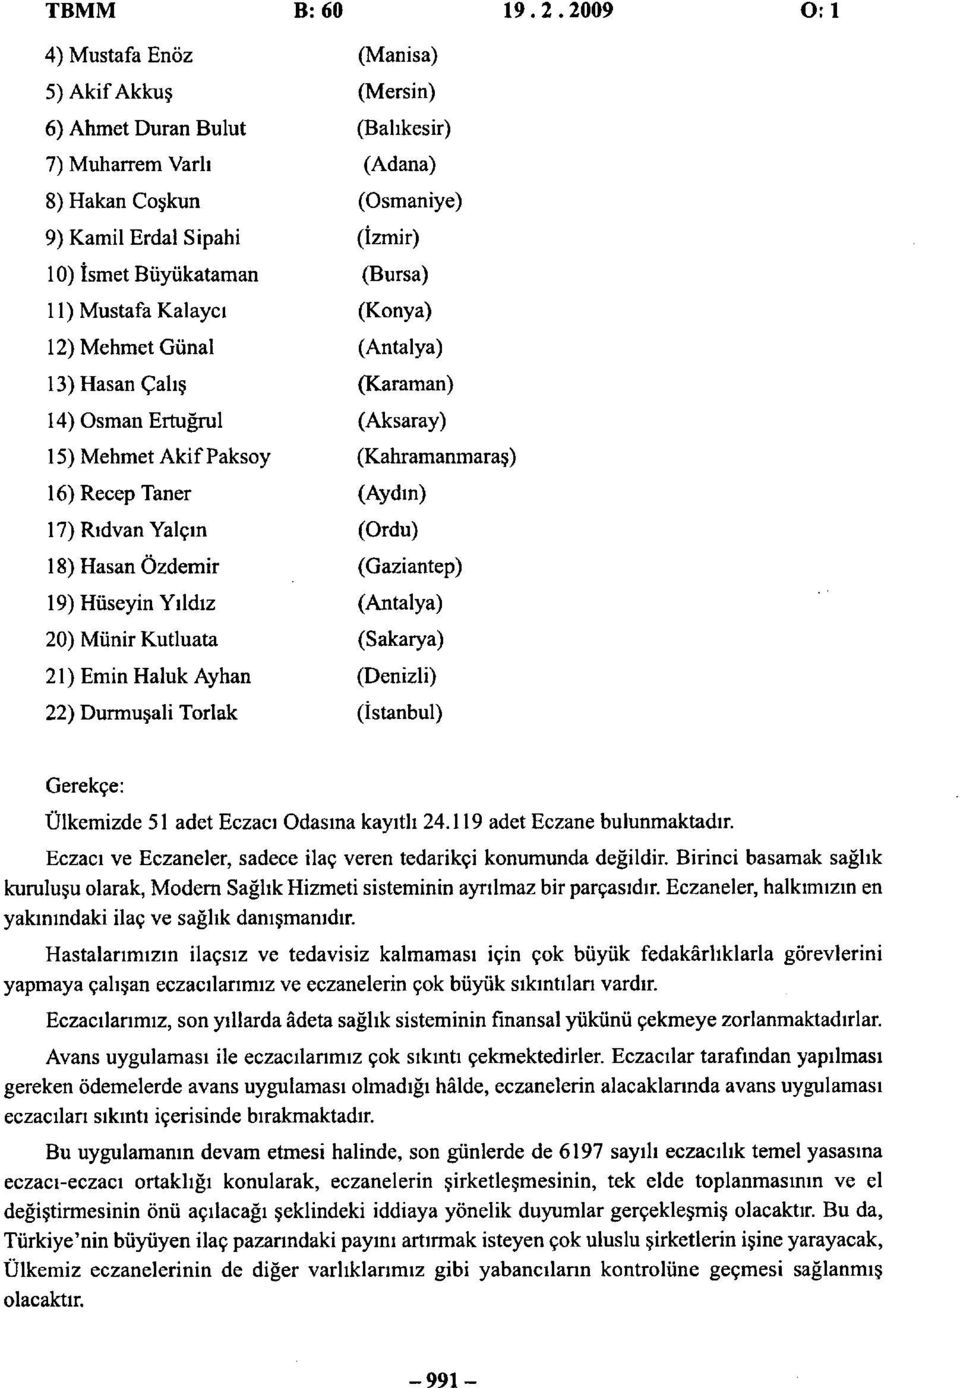 (Ordu) 18) Hasan Özdemir (Gaziantep) 19) Hüseyin Yıldız (Antalya) 20) Münir Kutluata (Sakarya) 21) Emin Haluk Ayhan (Denizli) 22) Durmuşali Torlak (İstanbul) Gerekçe: Ülkemizde 51 adet Eczacı Odasına